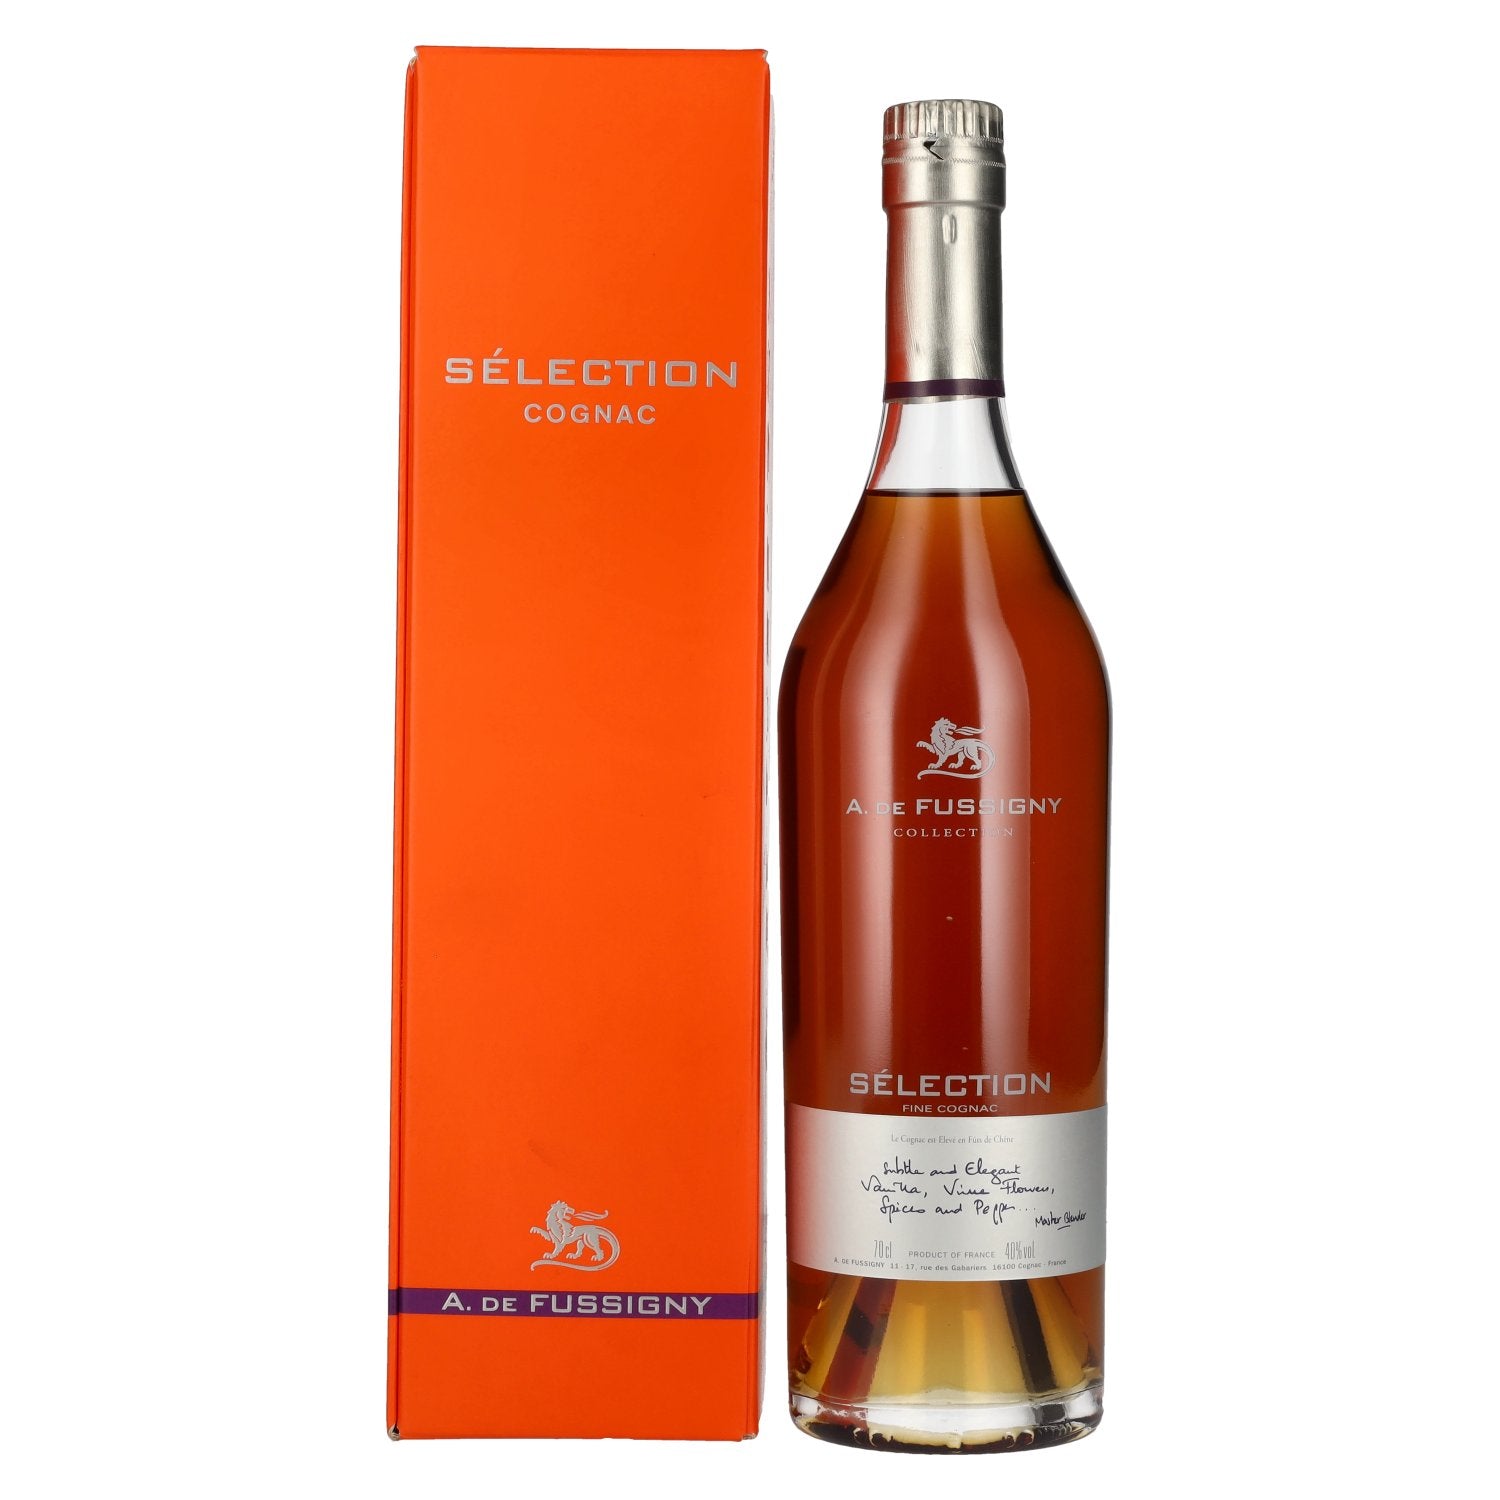 A. de Fussigny SELECTION Fine Cognac 40% Vol. 0,7l in Giftbox